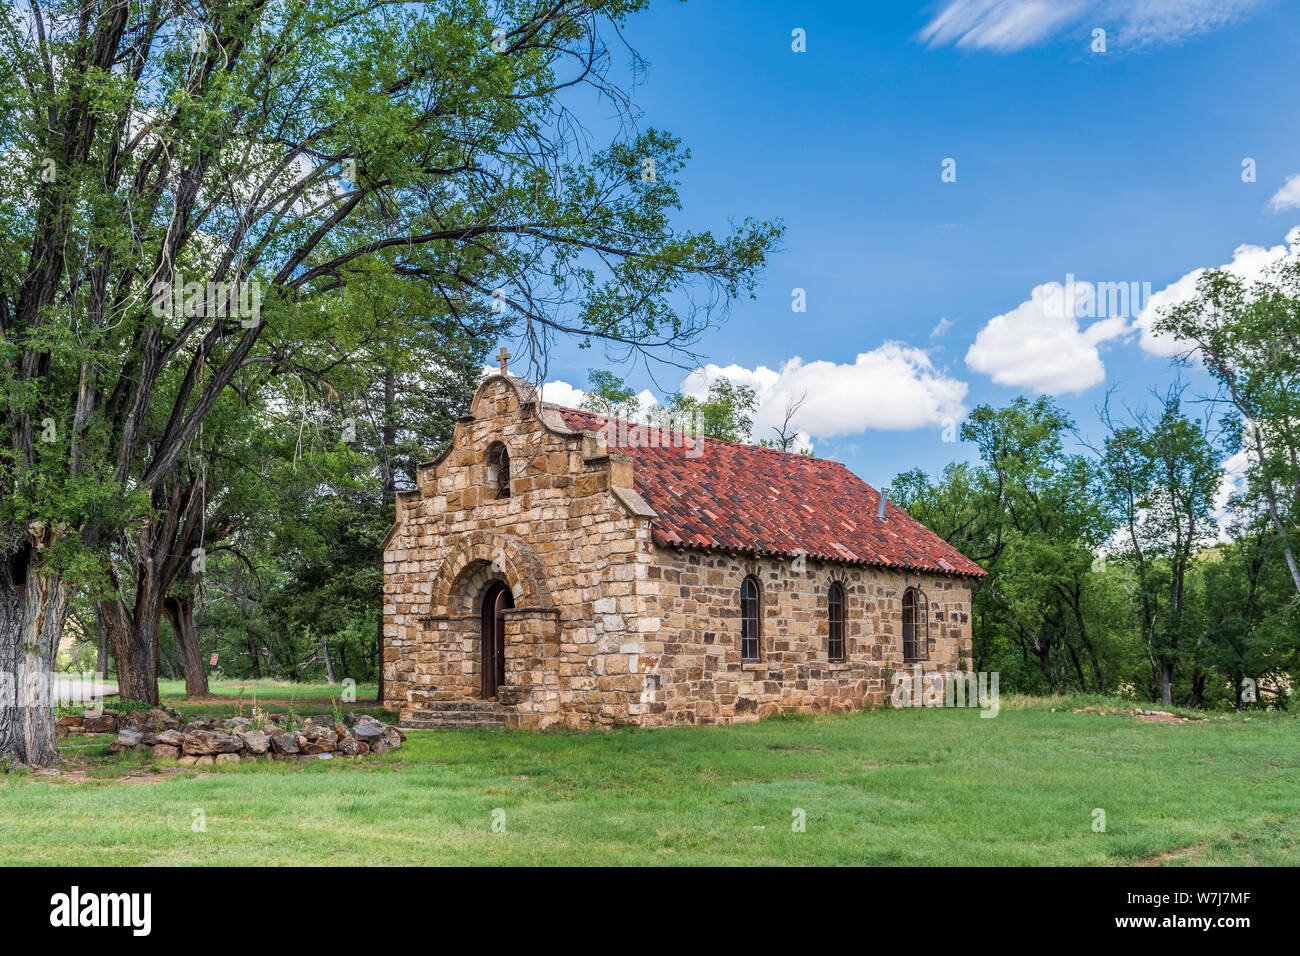 Katholische Kapelle am Fort Stanton Historic Site, militärische Festung aus dem 19. Jahrhundert, Lincoln County, New Mexico. Stockfoto